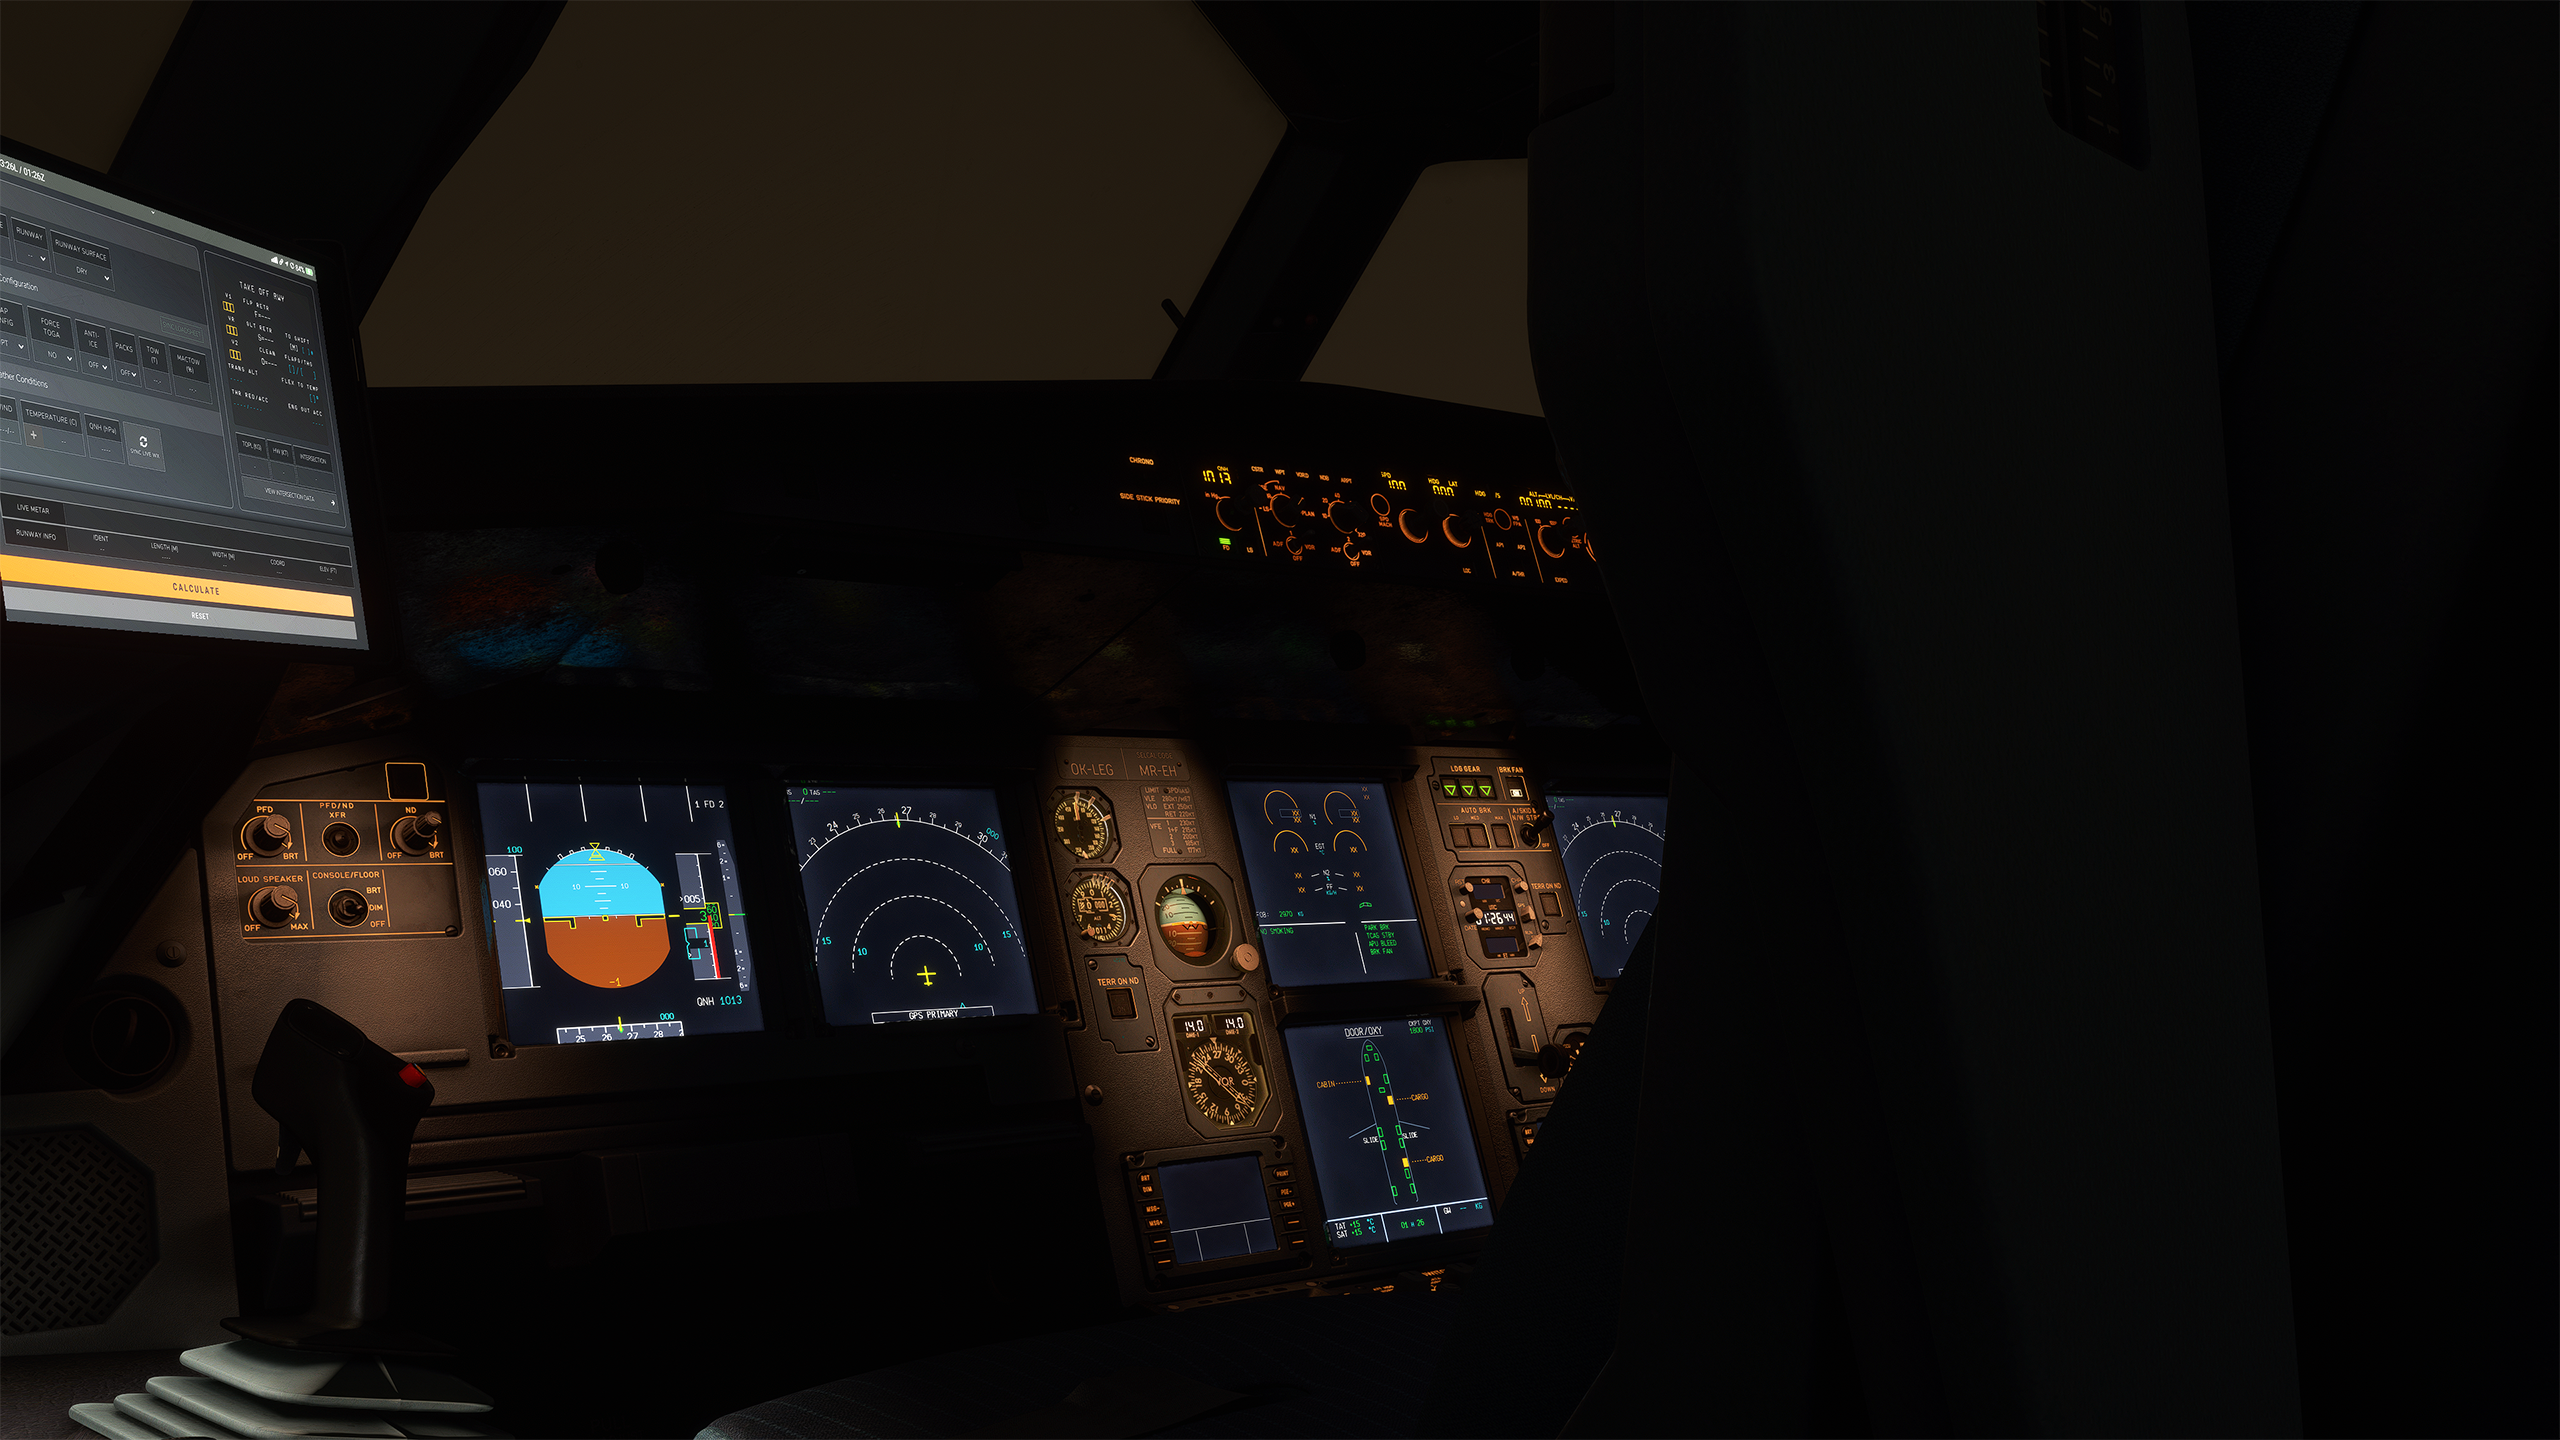 https://fenixsim.com/images/cockpit_11.png